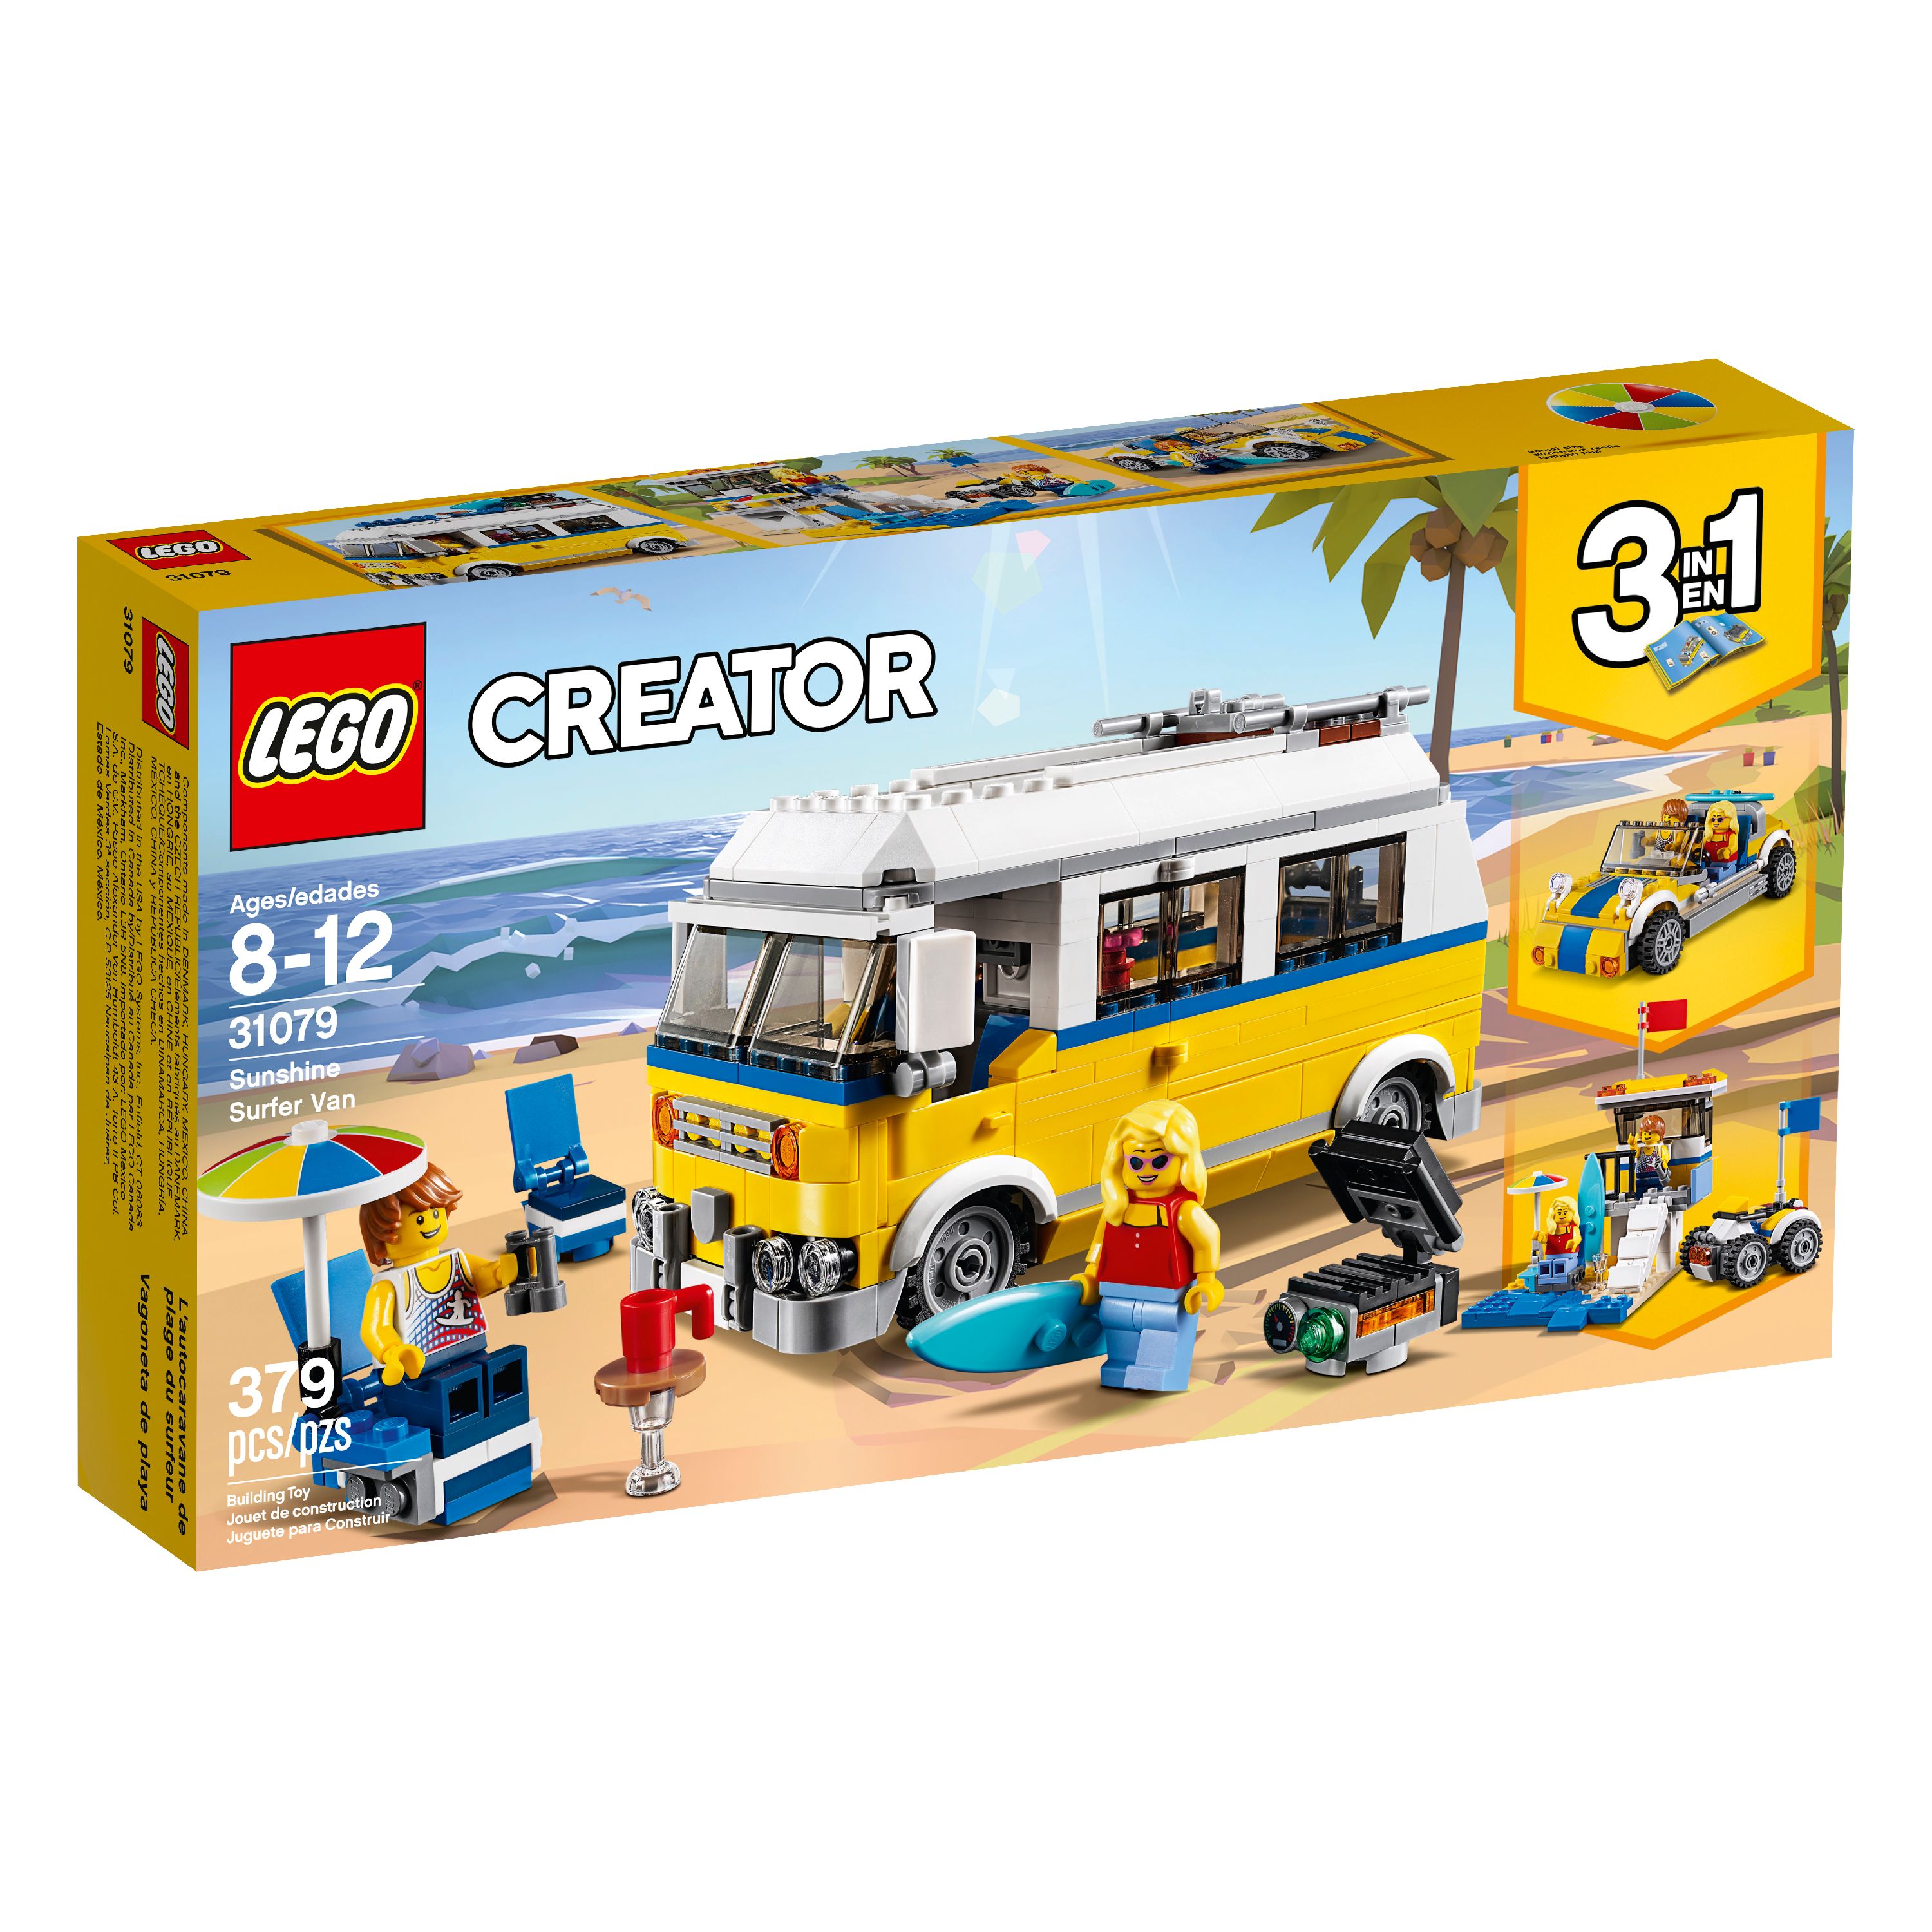 LEGO Creator 3in1 Sunshine Surfer Van 31079 Building Set - image 4 of 7